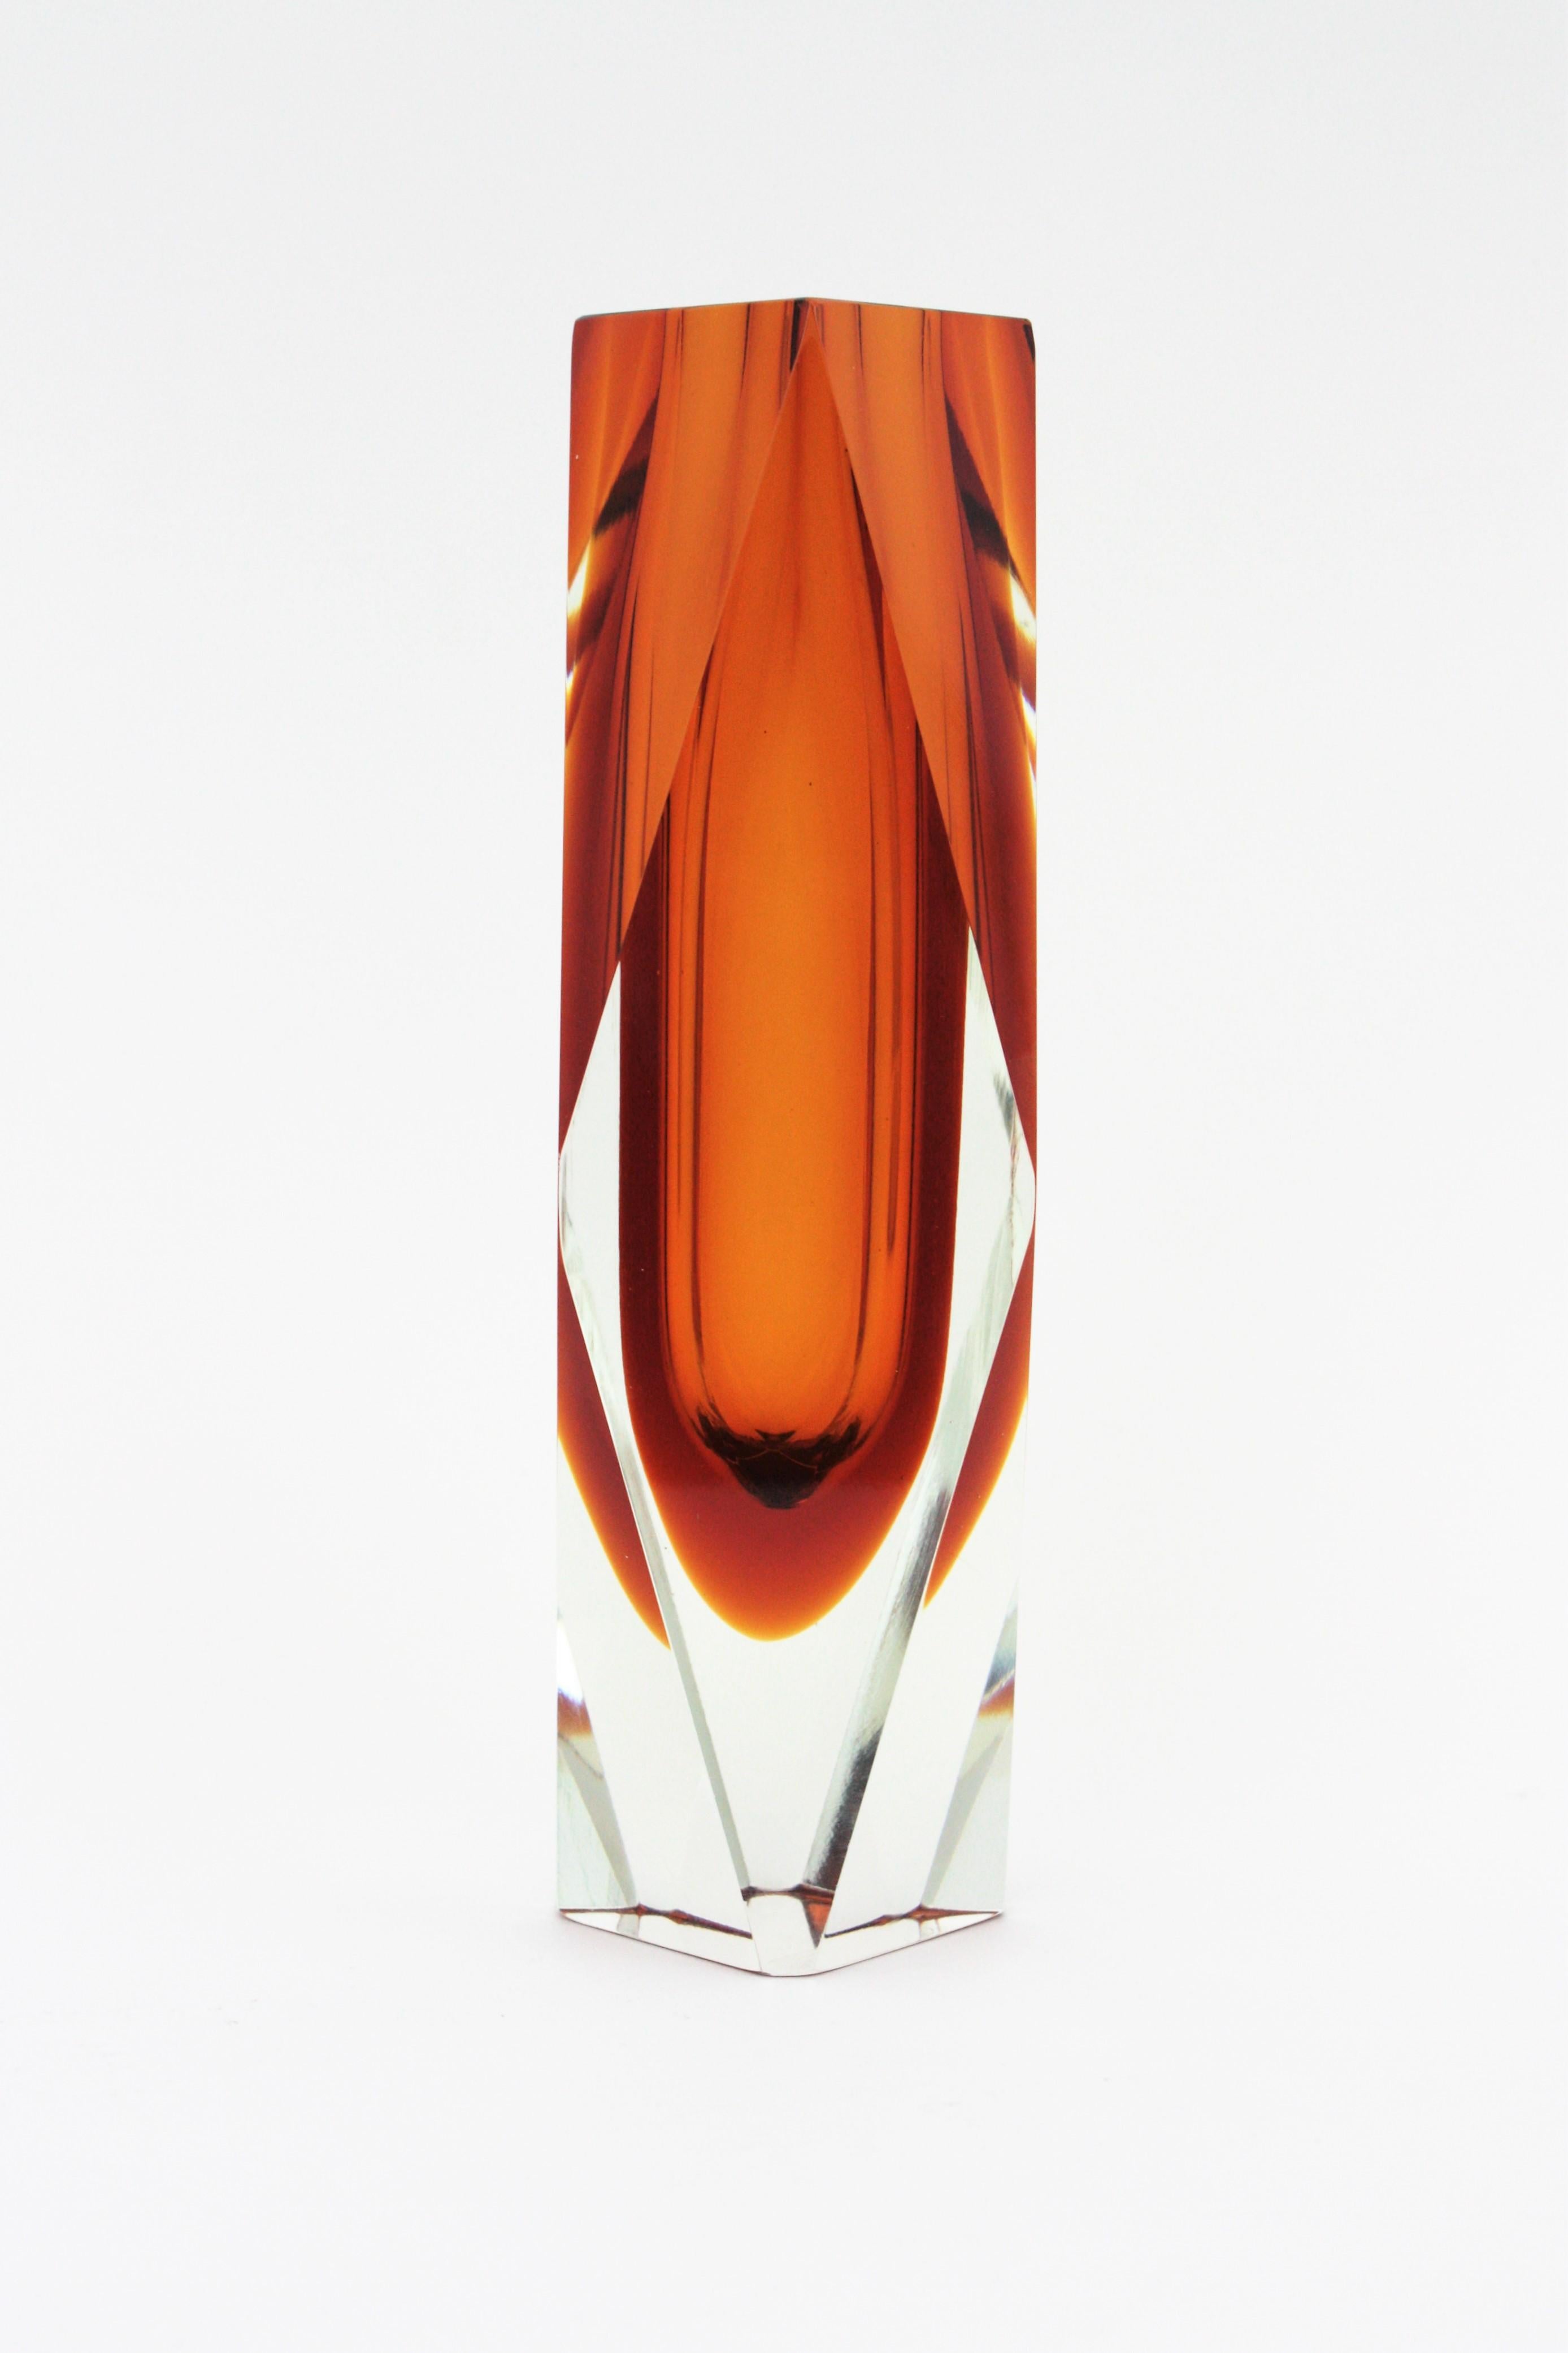 Art Glass Huge Mandruzzato Murano Faceted Orange Sommerso Glass Vase For Sale